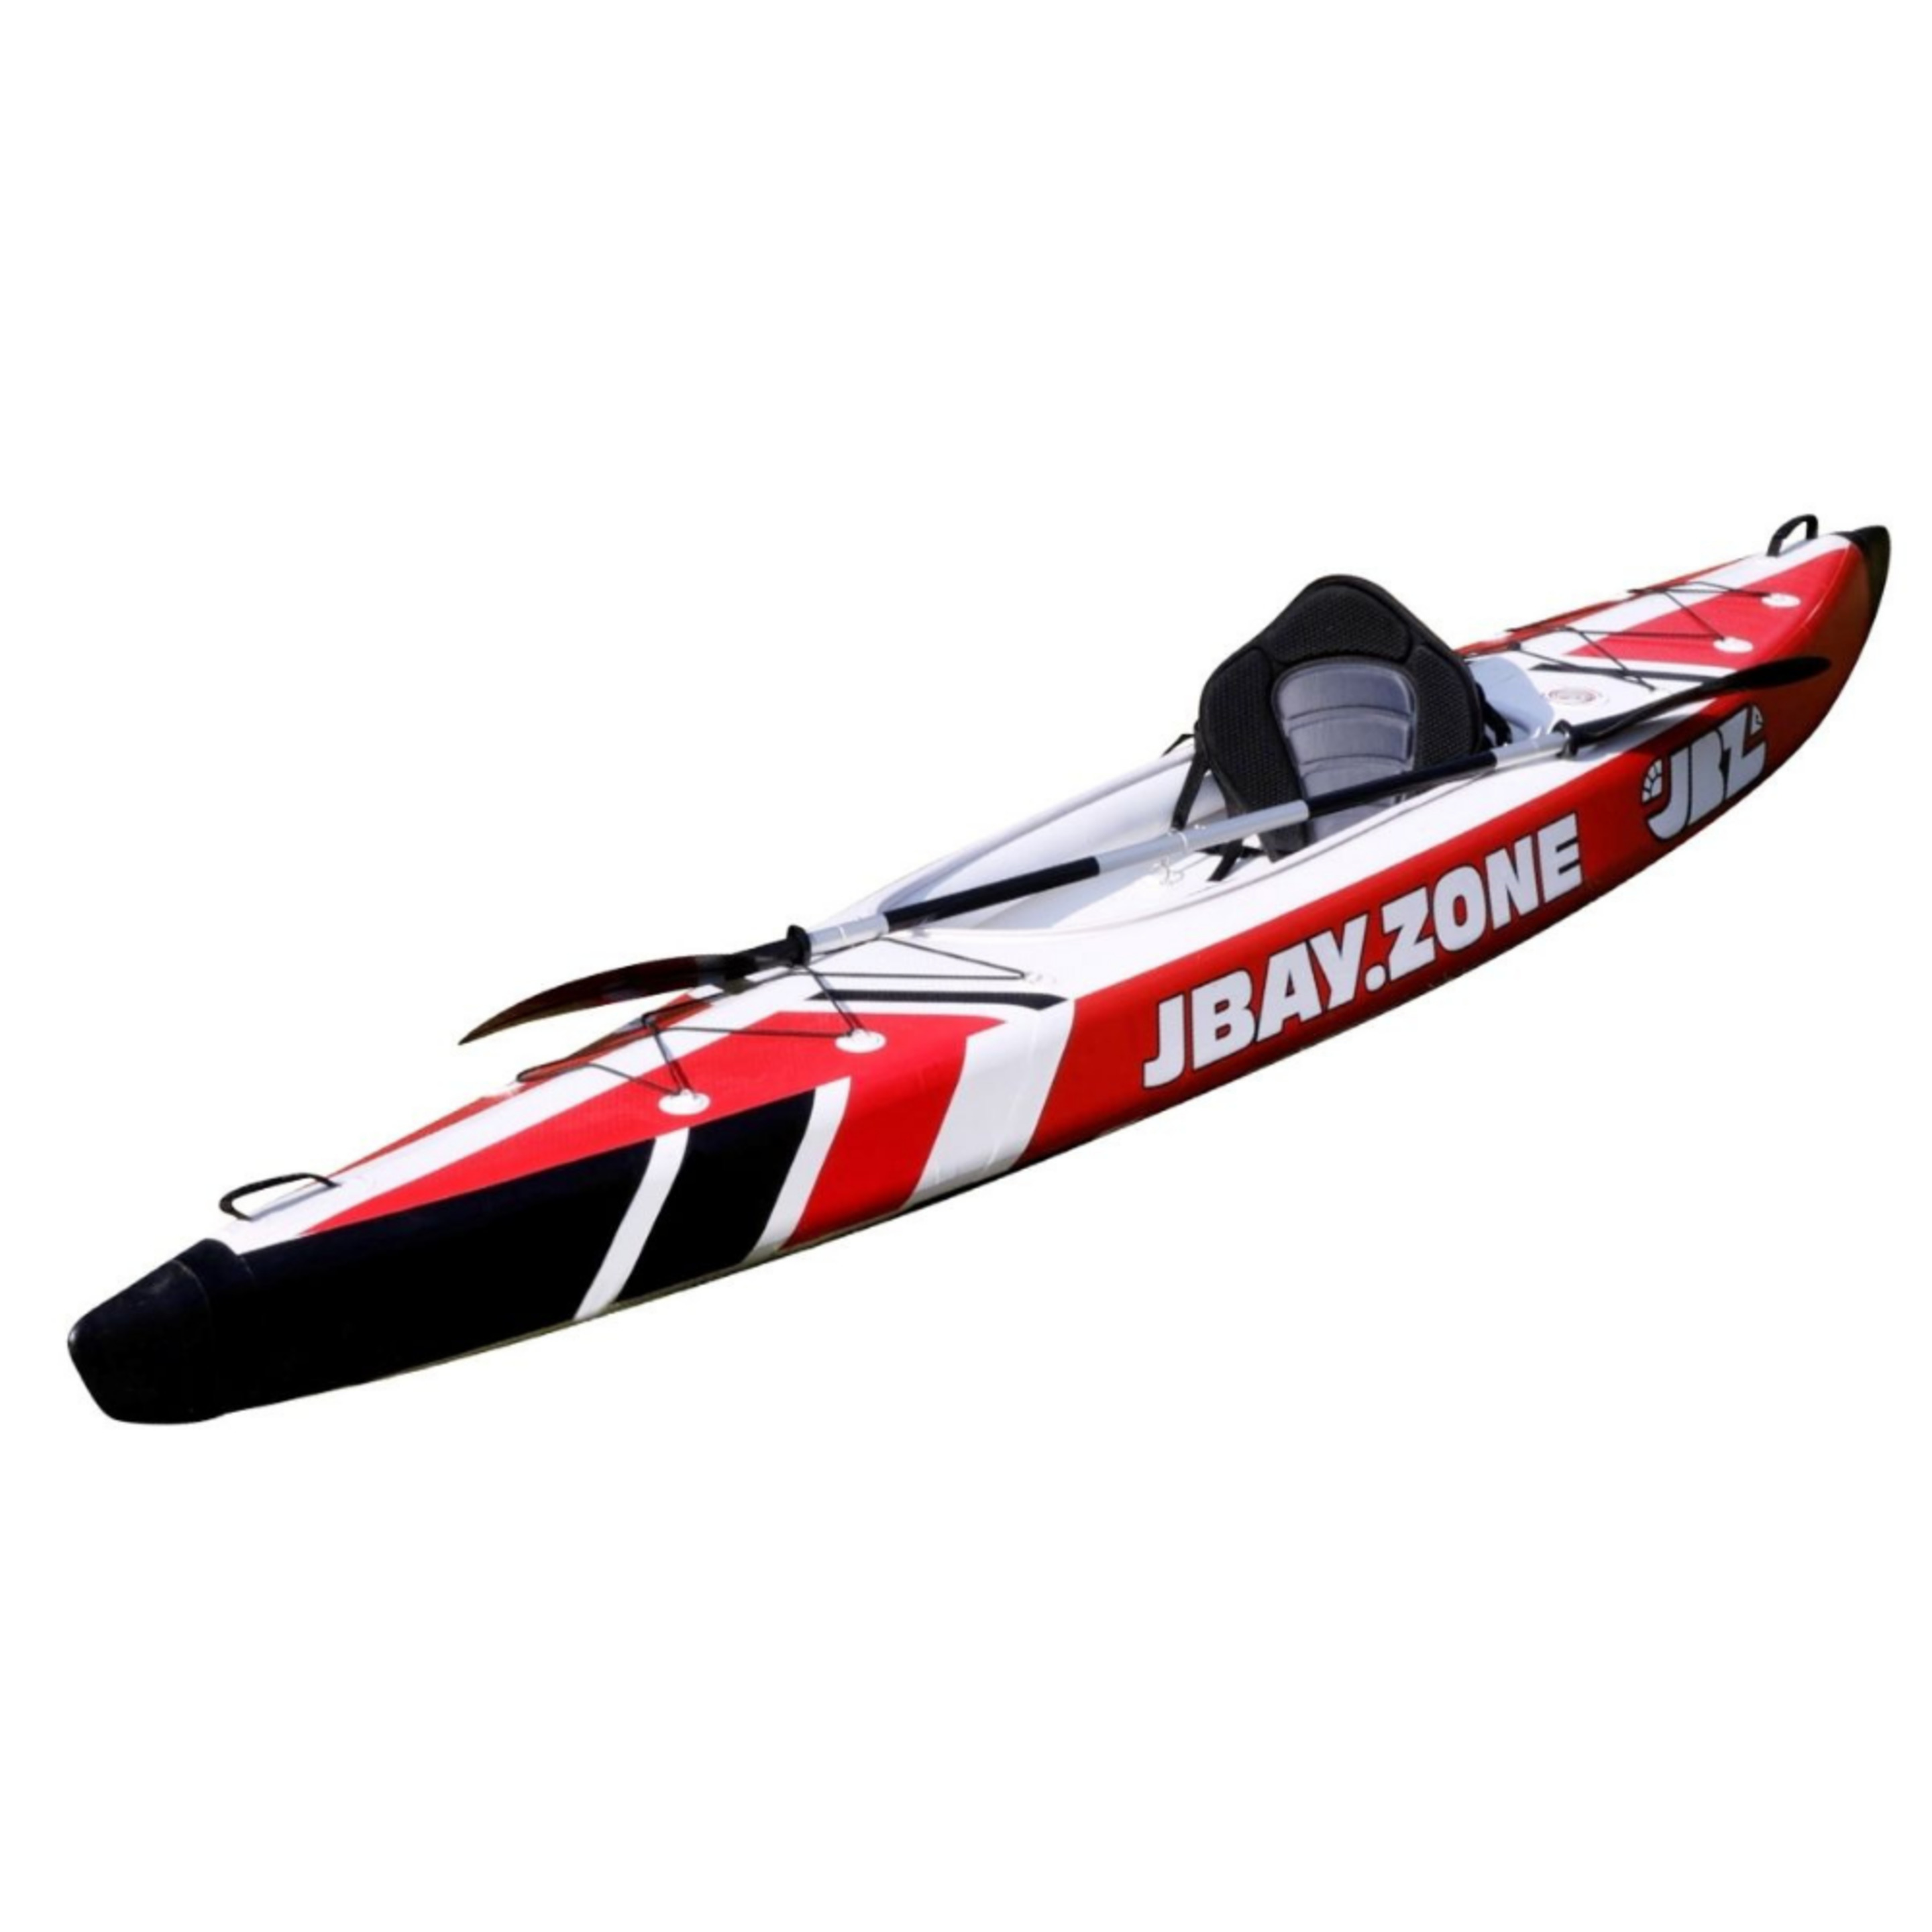 Kayak Hinchable 1 Plaza Jbay.zone V-shape Mono Enteramente En Drop-stitch